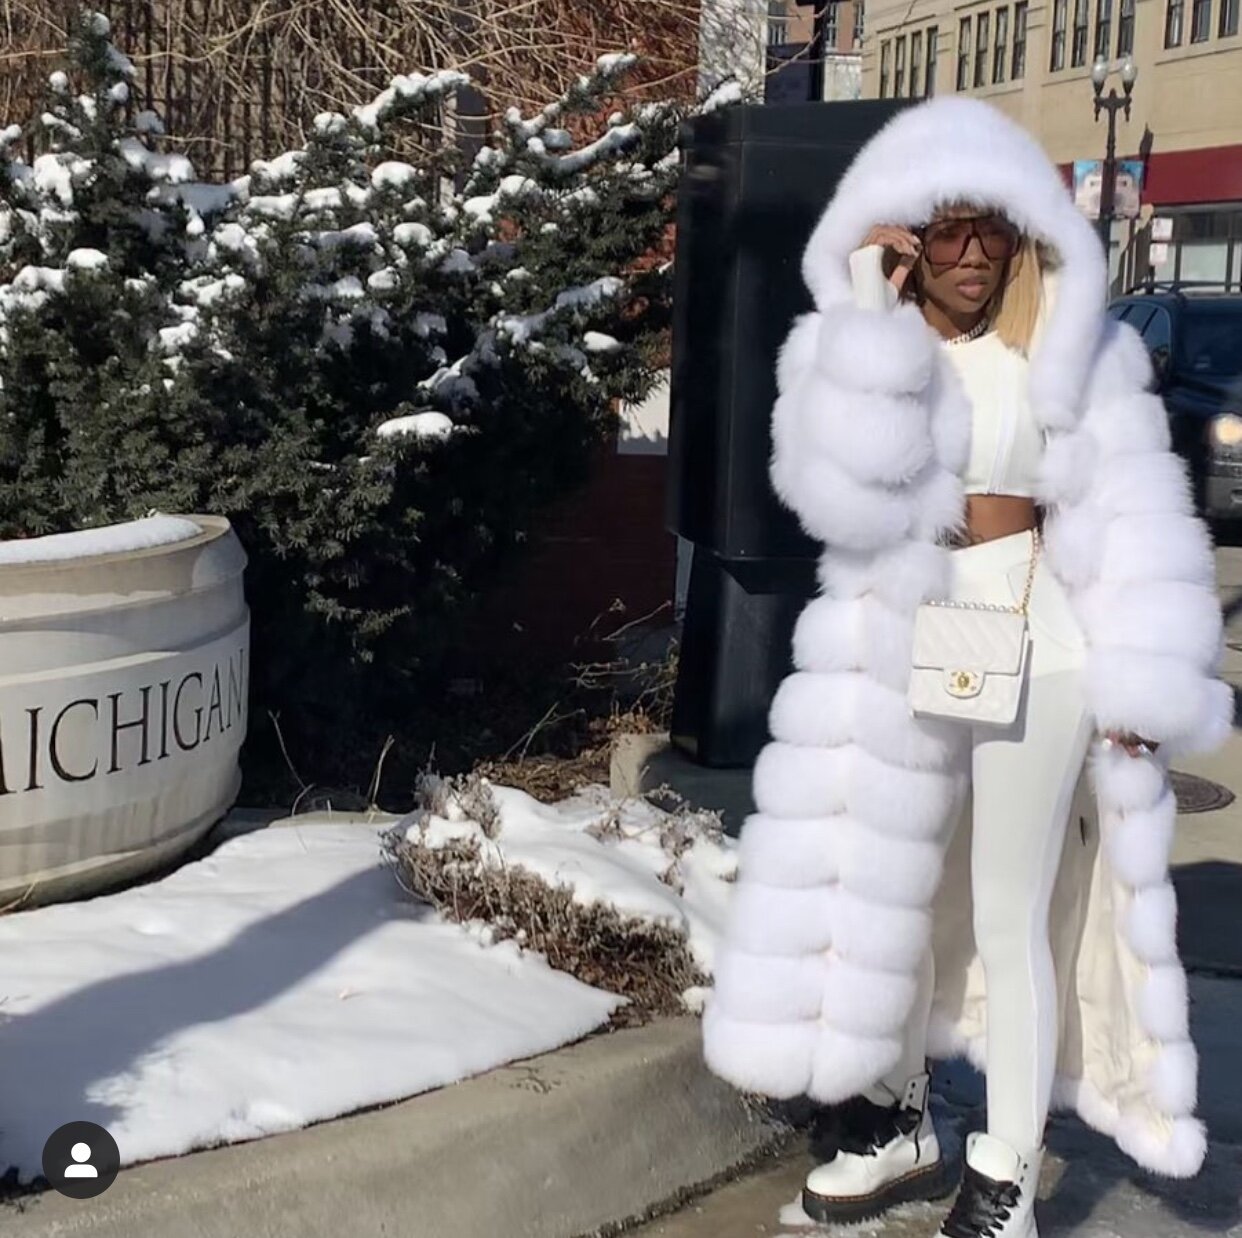 White Mink Fur Trench Coat For Women